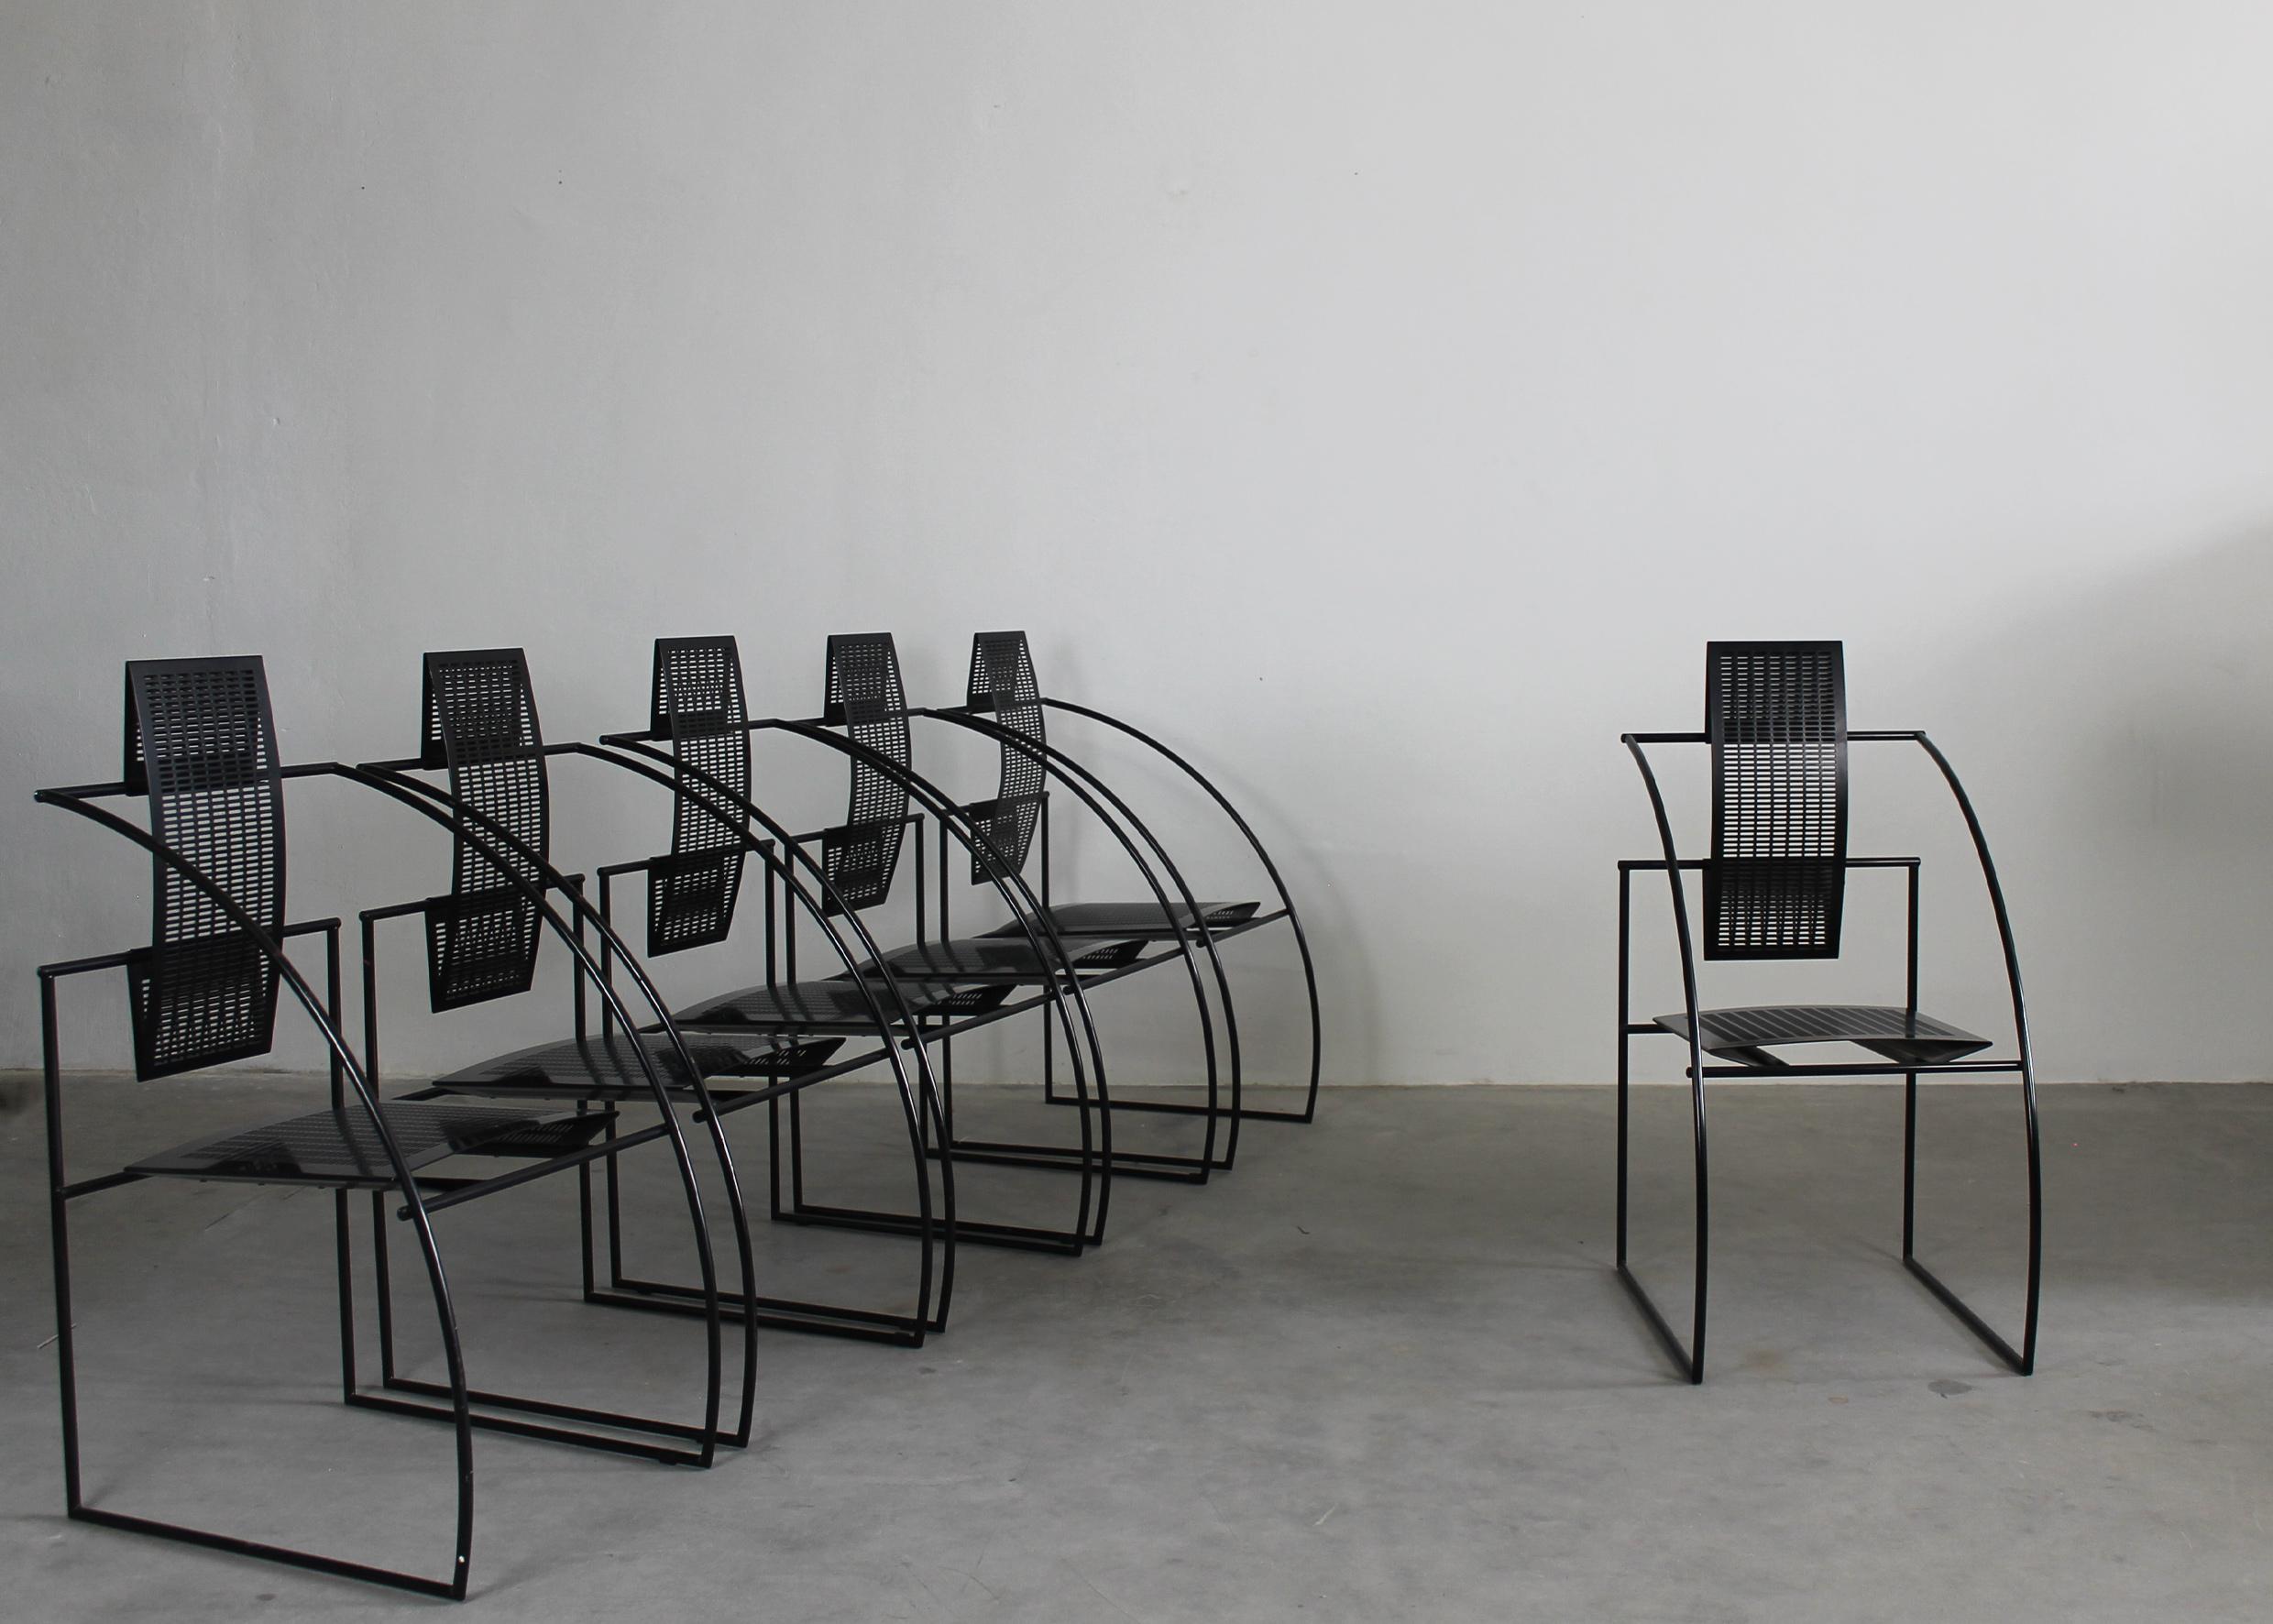 Satz von sechs Stühlen 605 Quinta mit Sitz und Rückenlehne aus gebogenem Lochblech mit schwarzem Stahlrohrgestell.
Entworfen von Mario Botta für Alias im Jahr 1985 (Dieser Stuhl wird nicht mehr hergestellt).

Der Quinta-Stuhl ist eine Architektur,